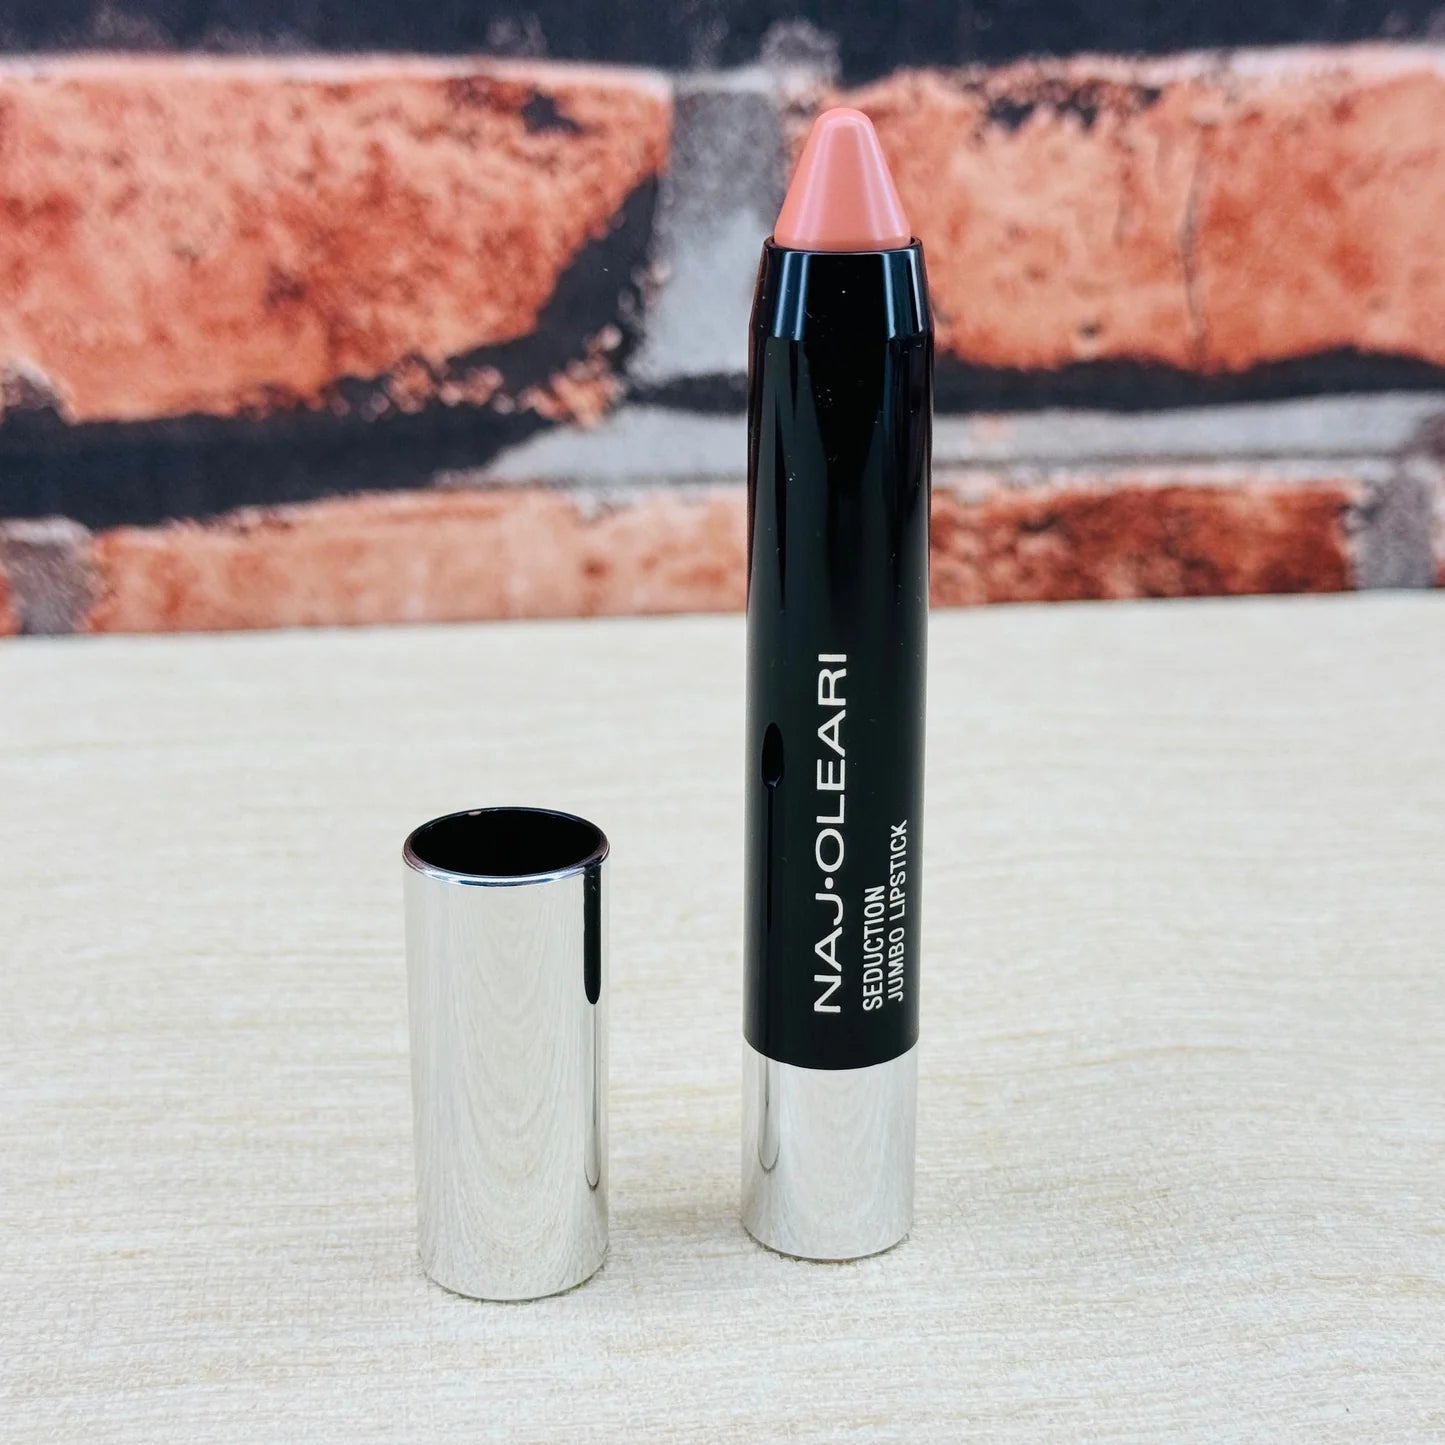 NajOleari Seduction Jumbo Lipstick Crayon | 03 Brick